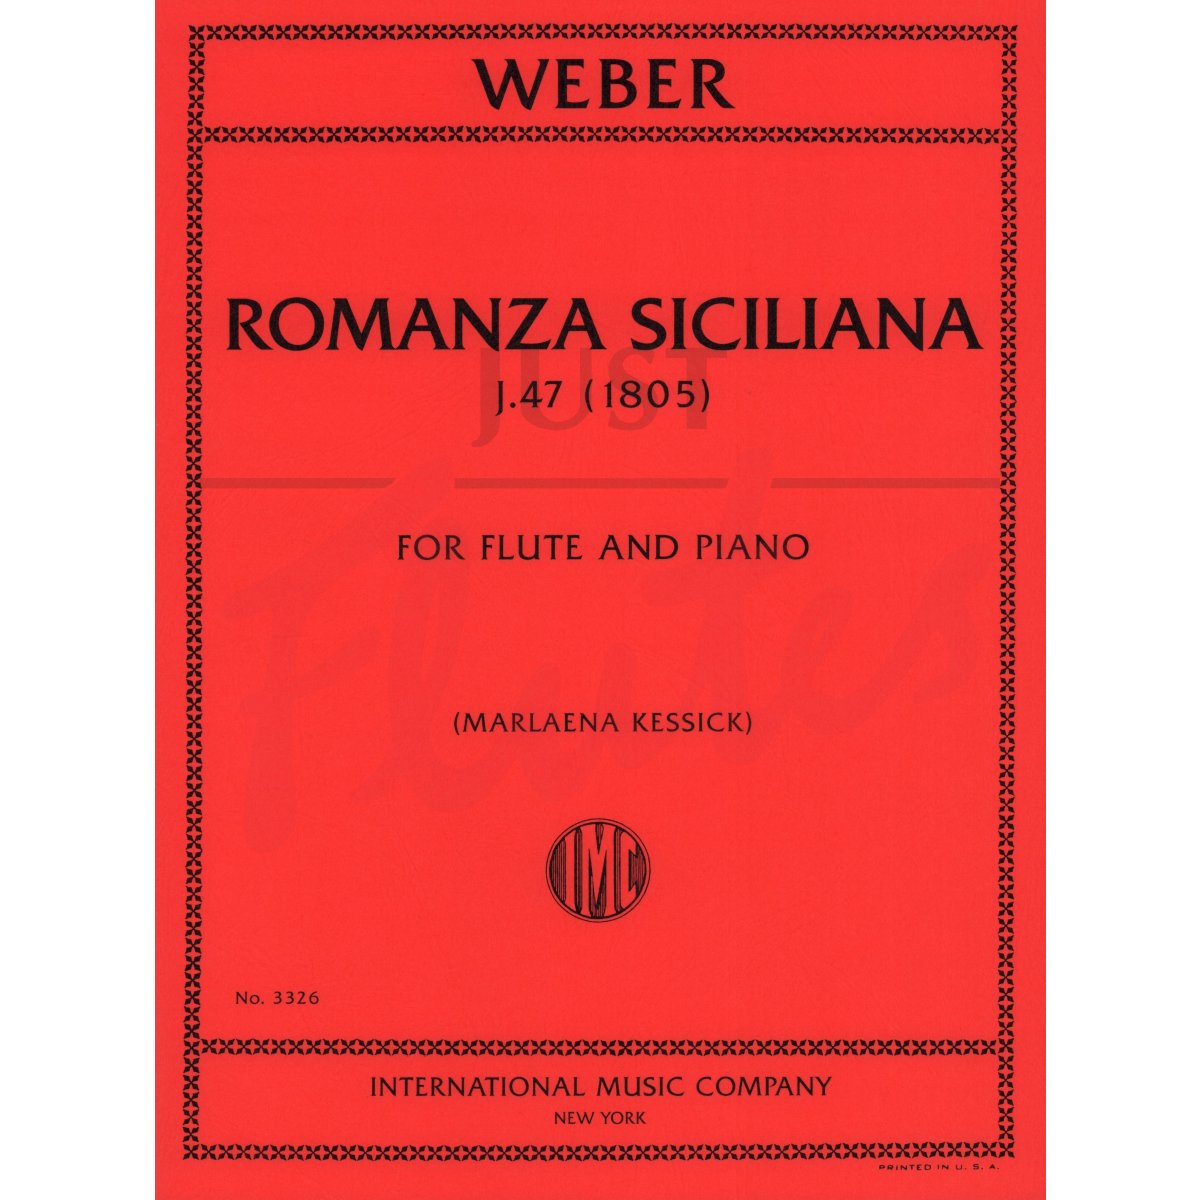 Romanza Siciliana for Flute and Piano